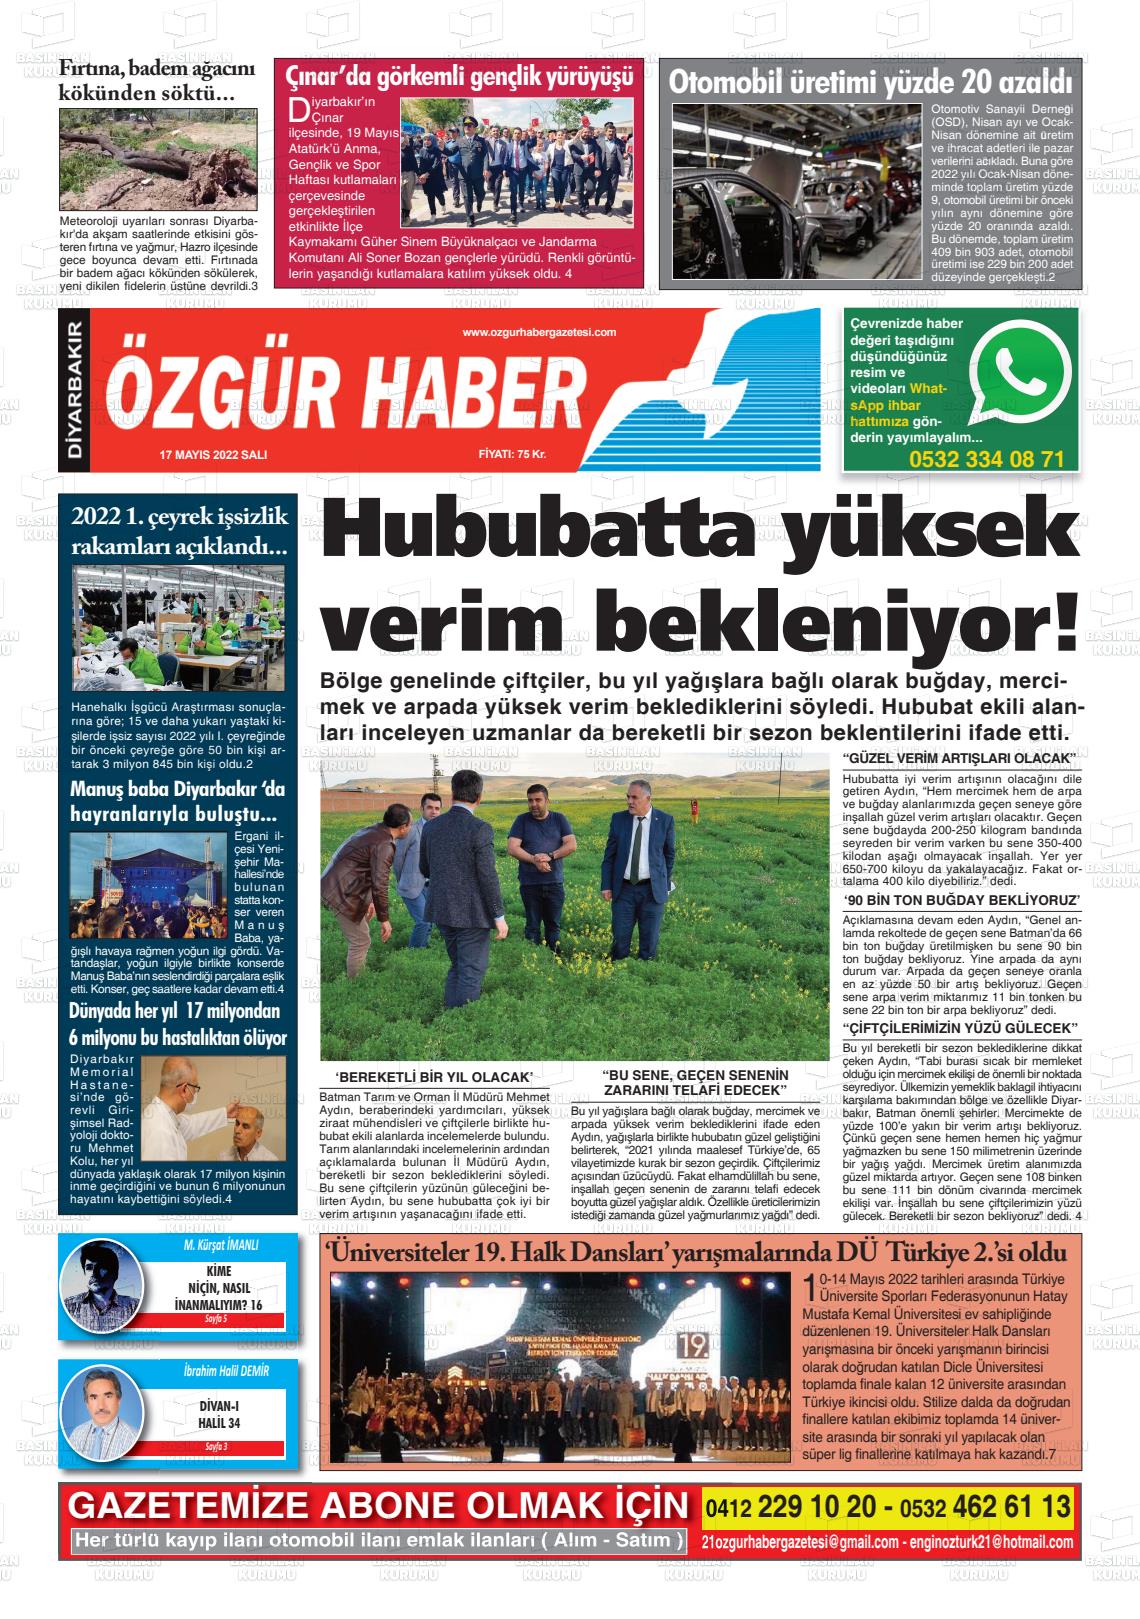 17 Mayıs 2022 Özgür Haber Gazete Manşeti